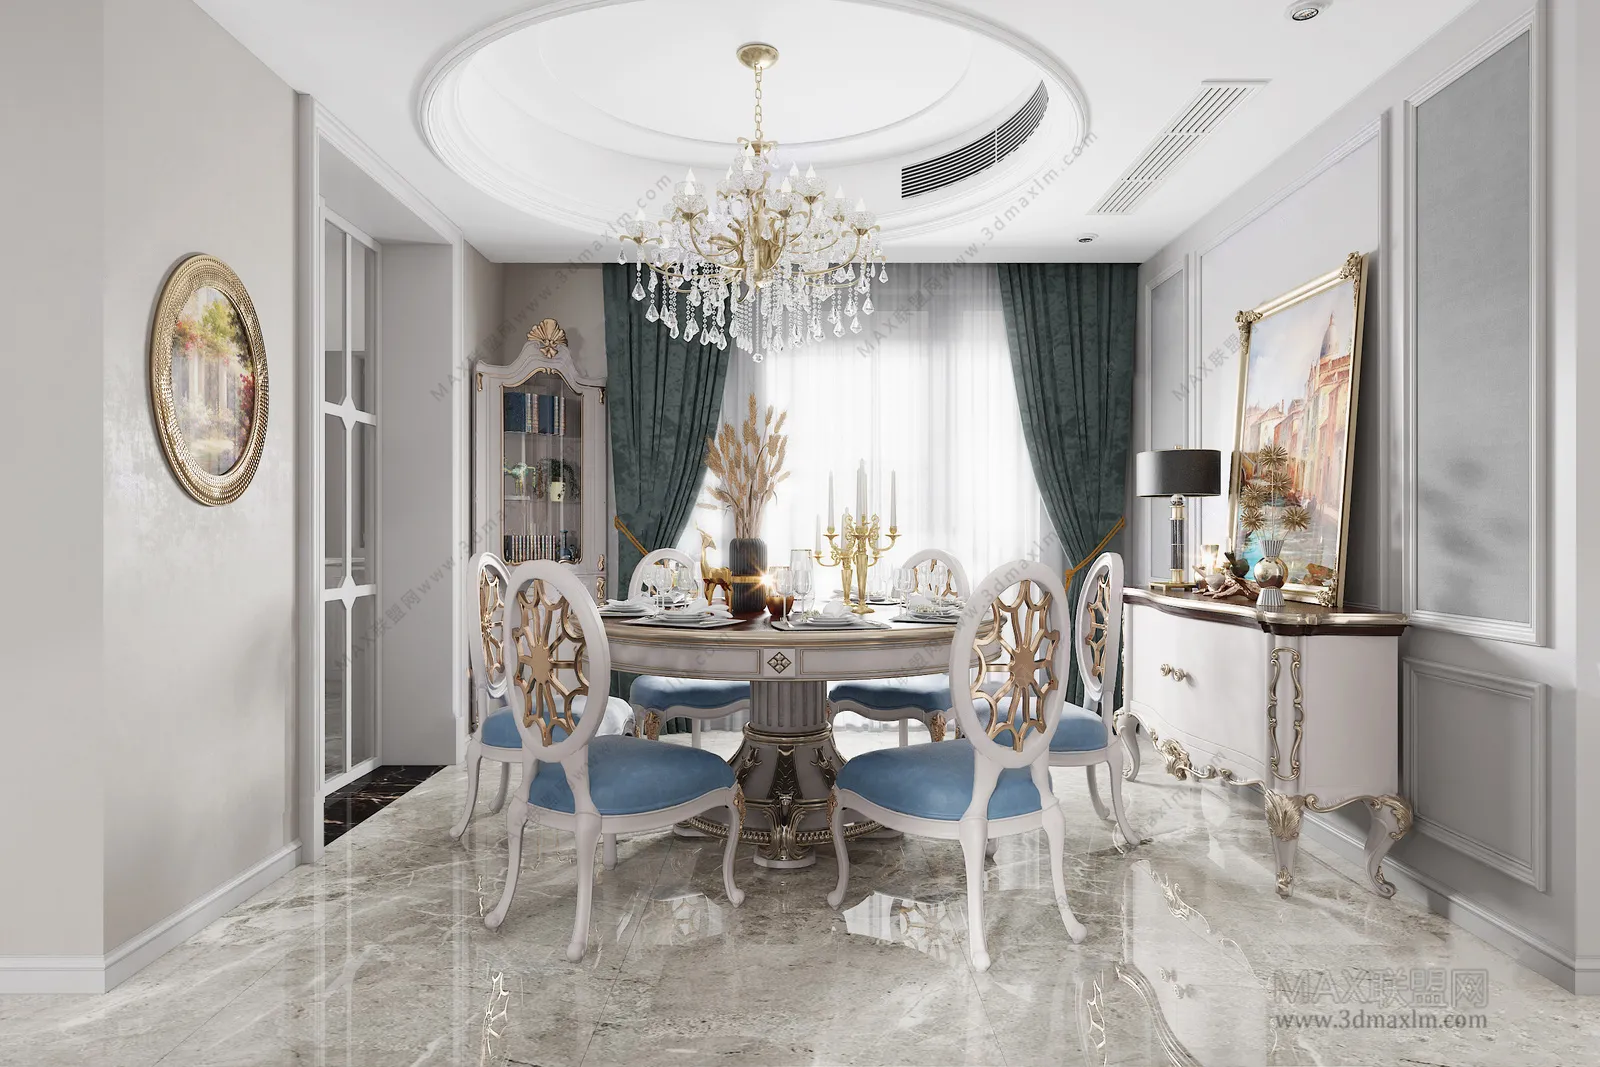 Dining room – Interior Design – European Design – 007